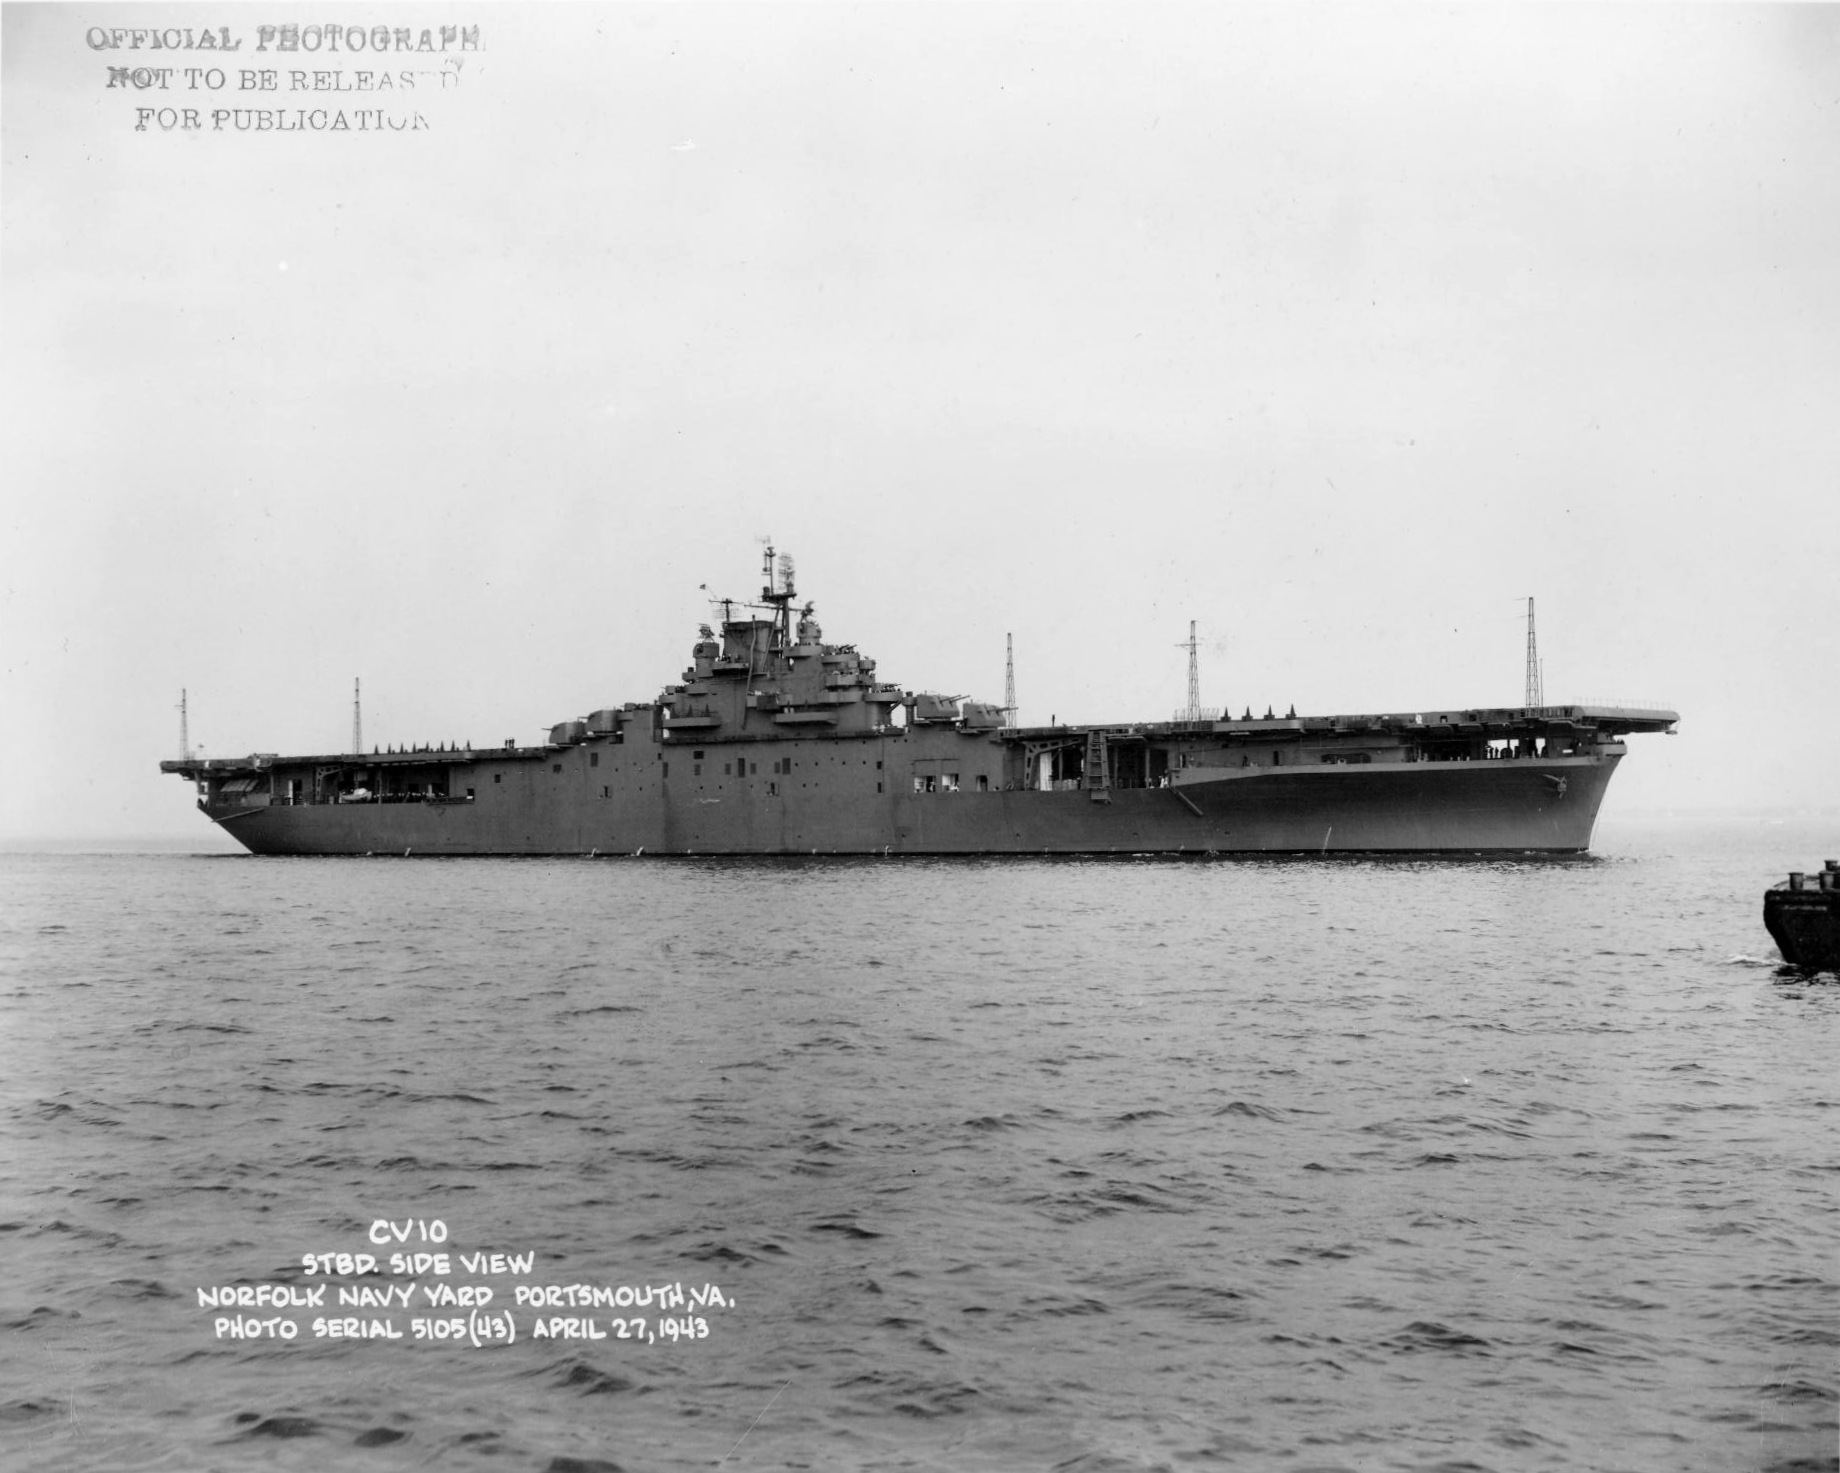 USS Yorktown underway off Norfolk Navy Yard, Portsmouth, Virginia, United States, 27 Apr 1943; note Measure 21 camouflage